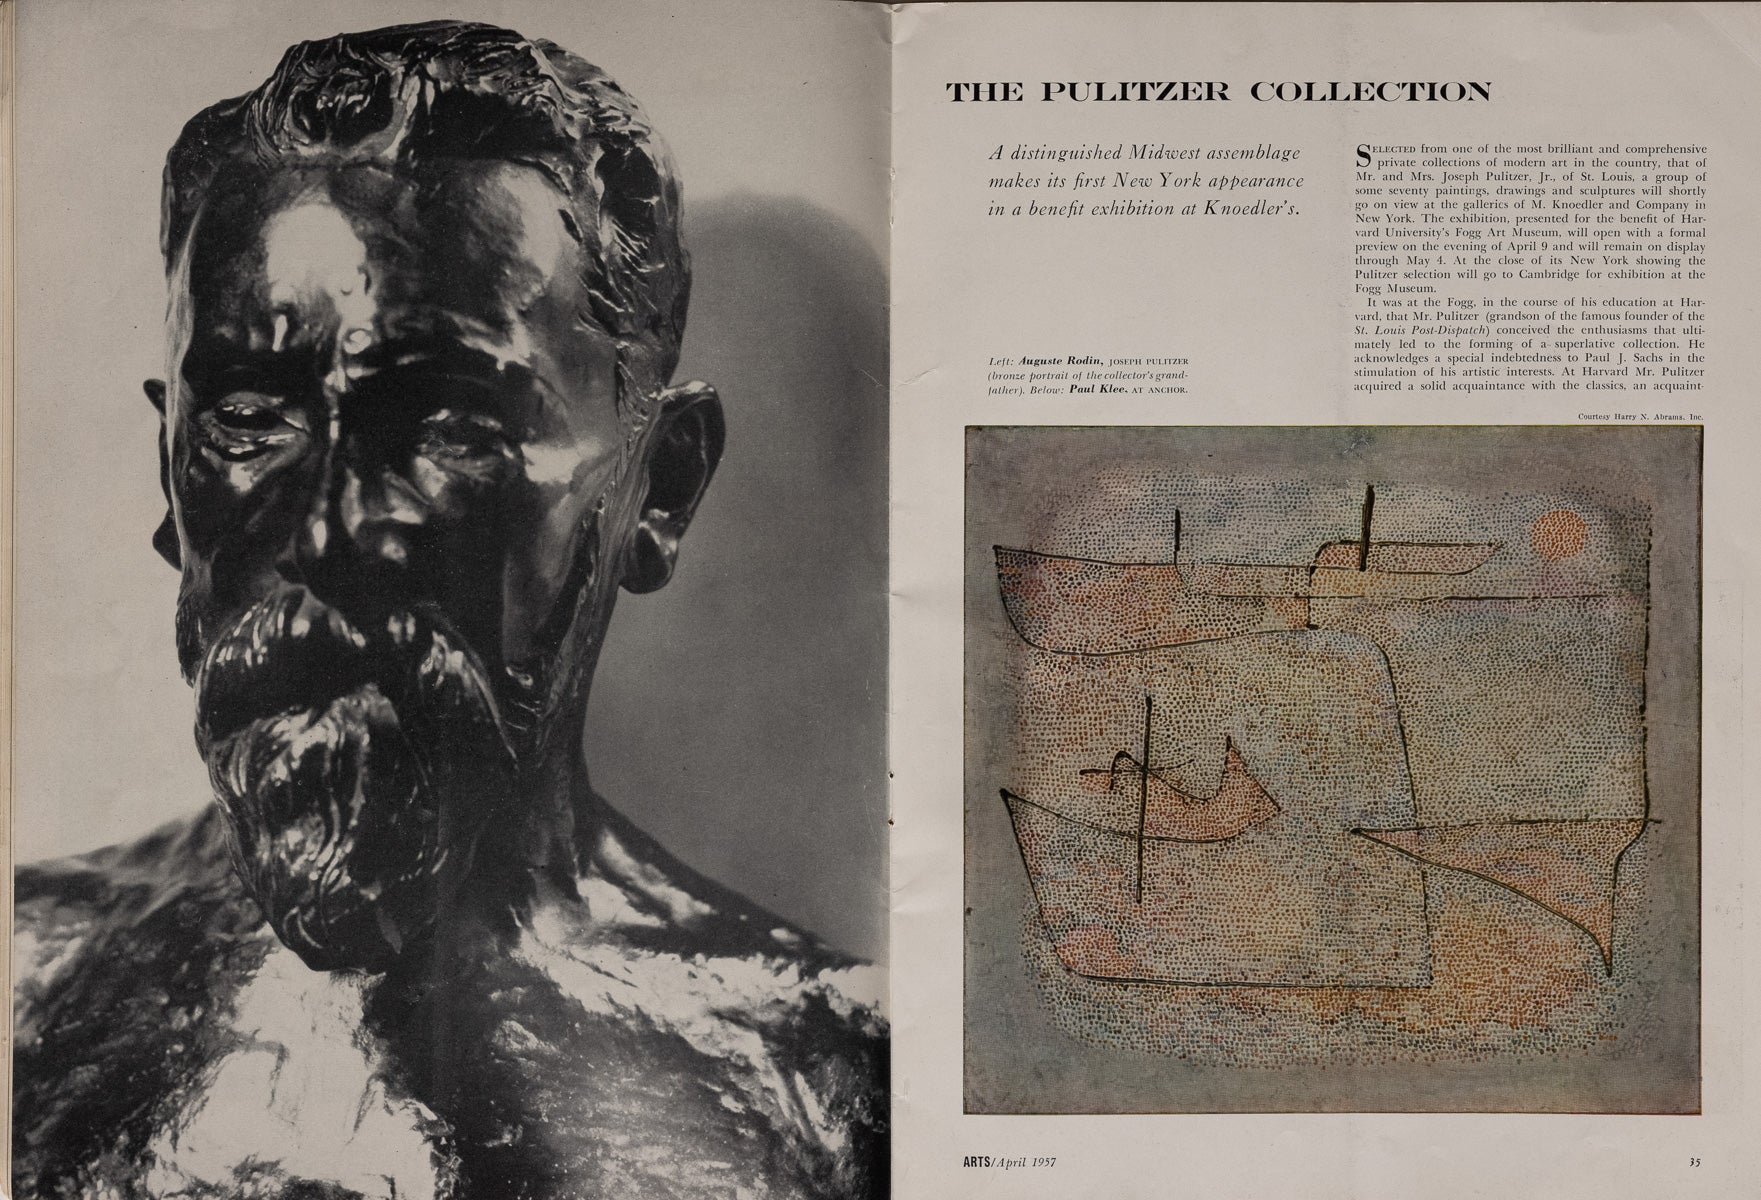 ARTS Magazine, Vol. 31, No. 7, 1957 – "The Duchamp Family"  [Stapled]